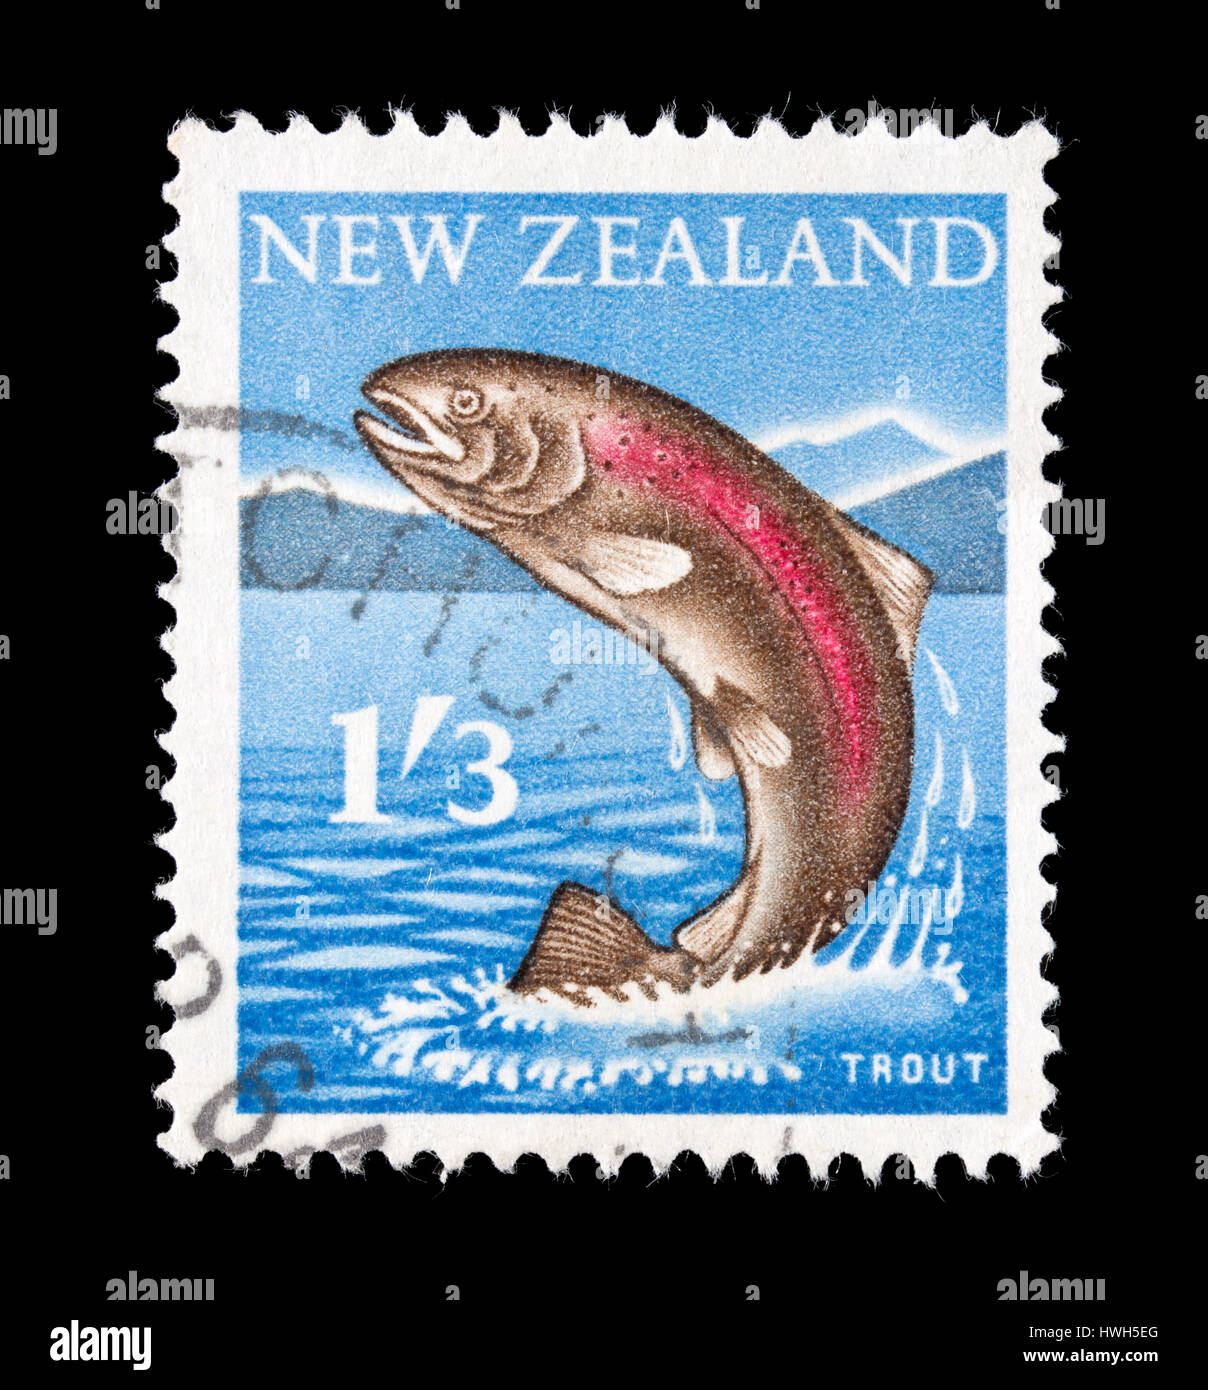 Timbre-poste de Nouvelle-zélande représentant une truite Banque D'Images